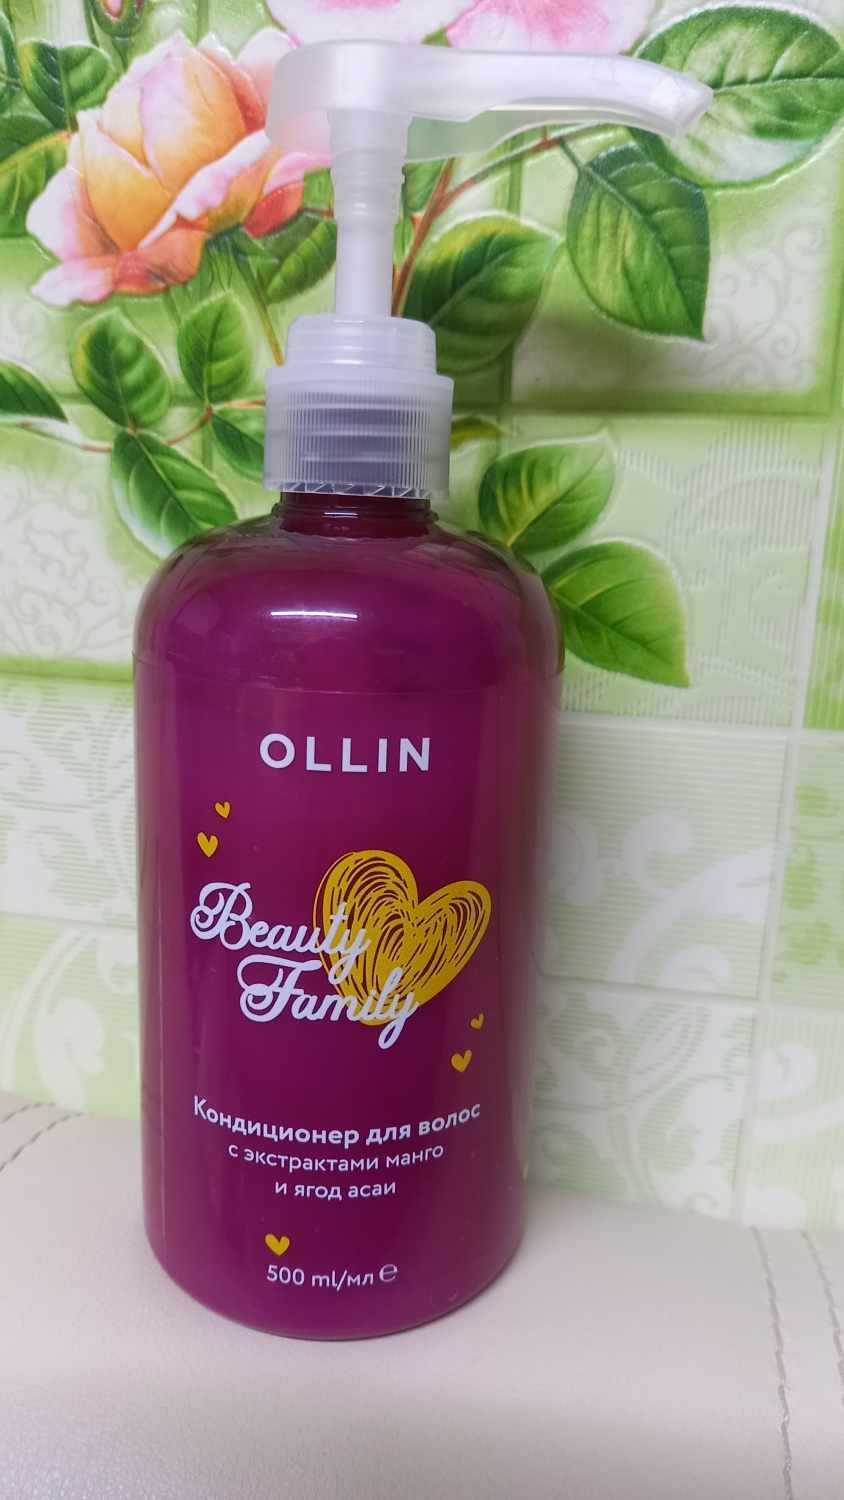 OLLIN Beauty Family Кондиционер для волос с экстрактоми манго и ягод асаи 500 мл